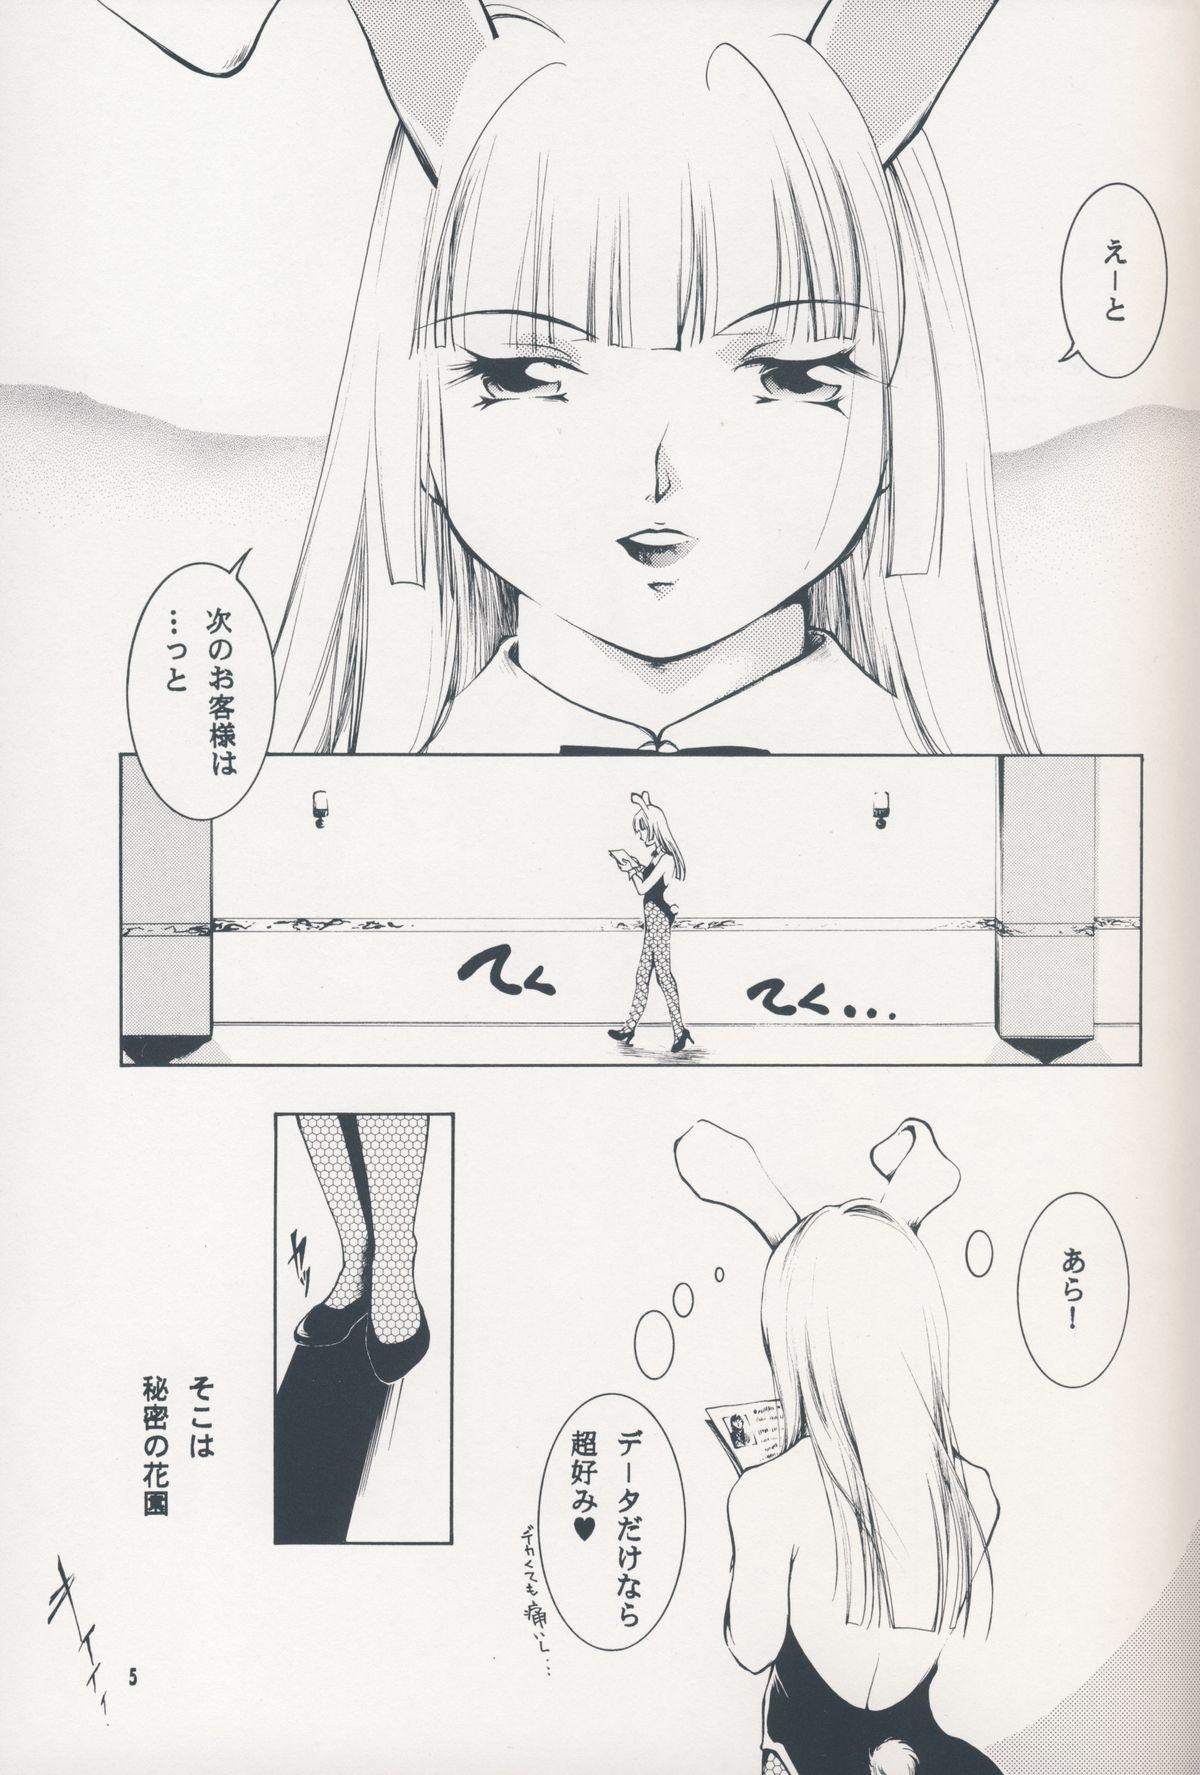 Ffm Hadashi no VAMPIRE 7 - Vampire princess miyu Women - Page 4